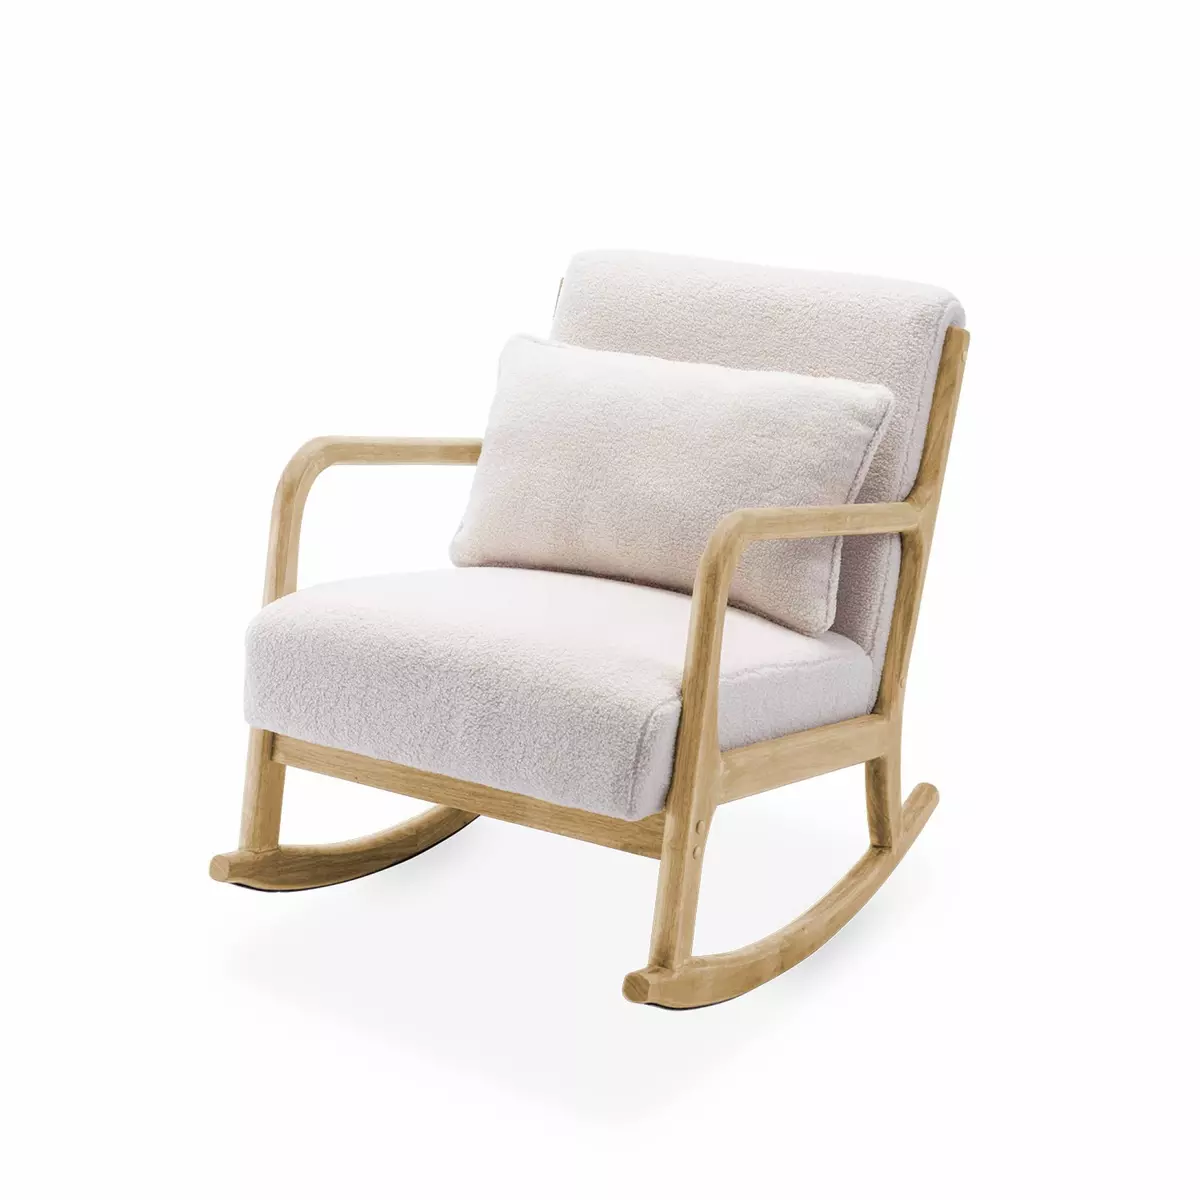 ALICE'S HOME Fauteuil à bascule design en bois et tissu. bouclettes blanches. 1 place. rocking chair scandinave